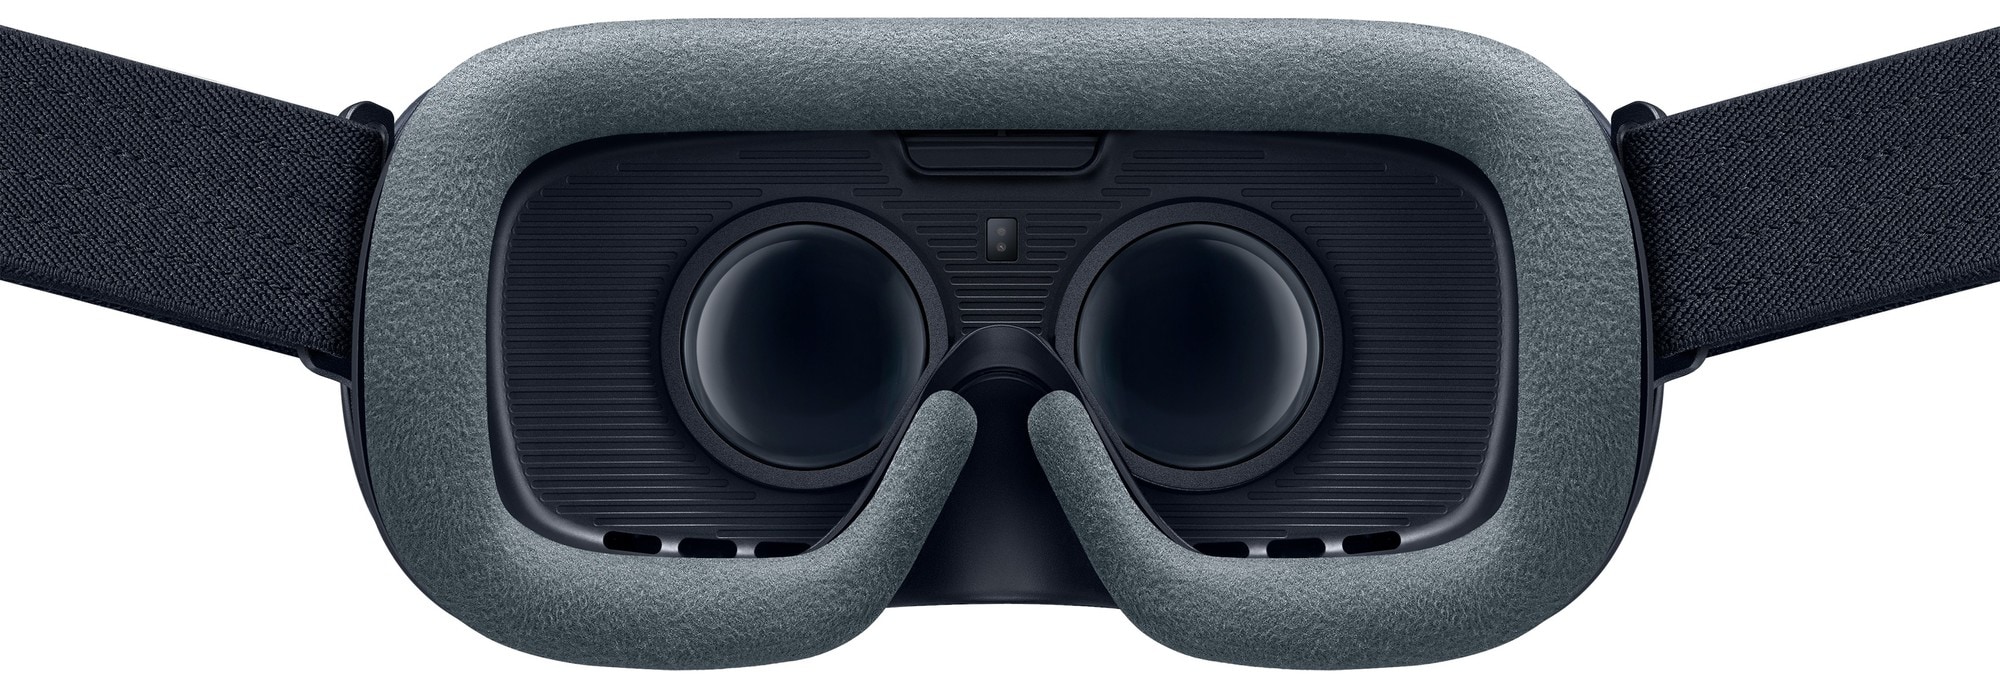 Samsung Gear VR-briller med kontroller (2017) - VR gaming - Elkjøp